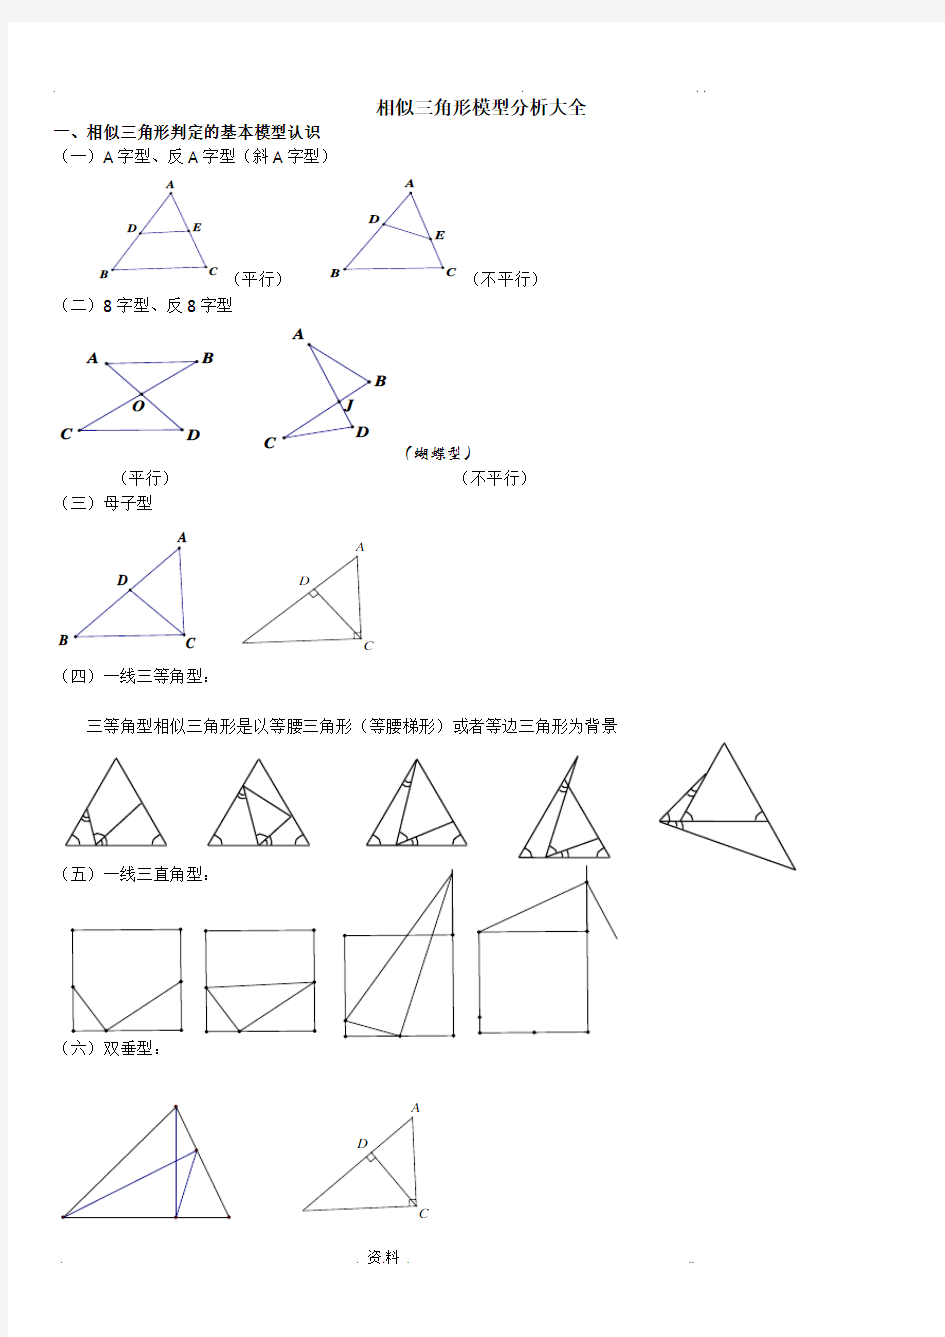 初二超经典相似三角形模型分析大全